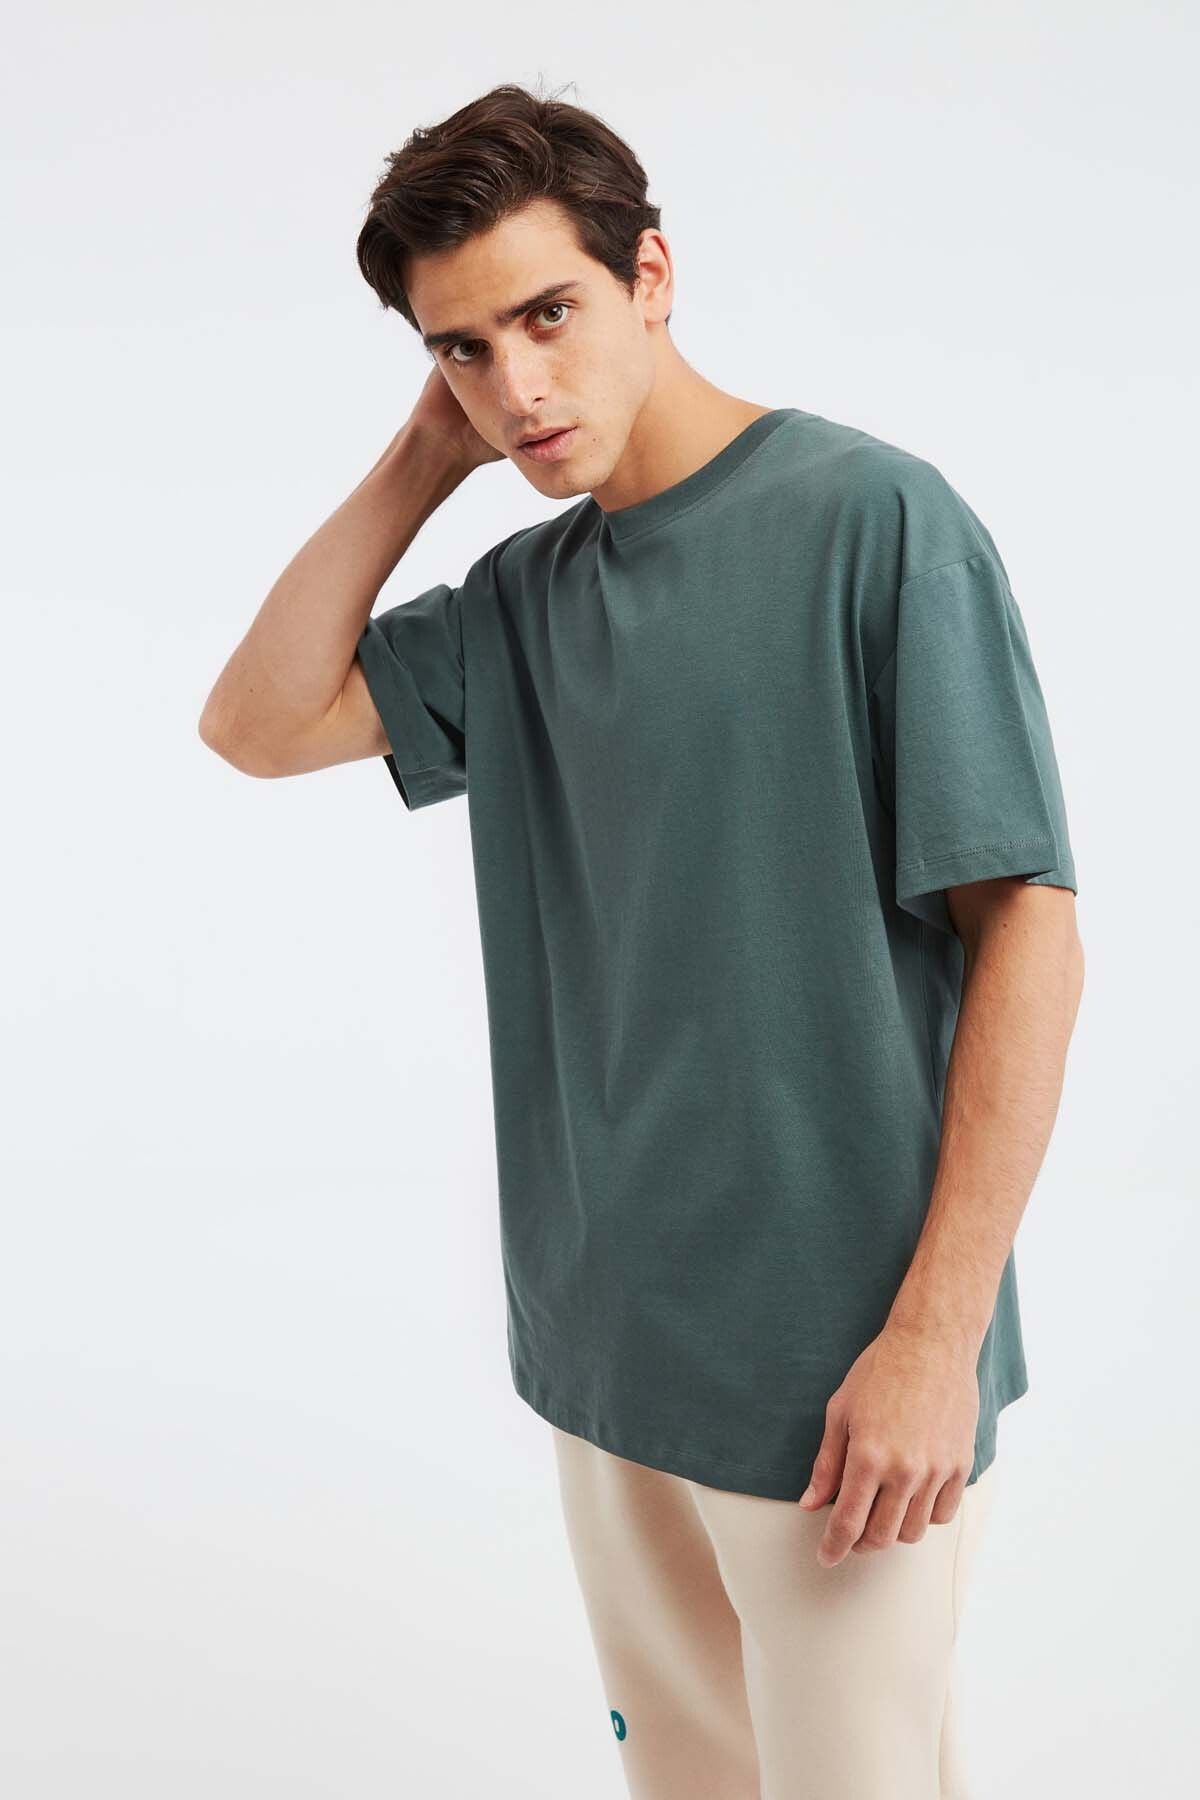 GRIMELANGE Jett Erkek Oversize Fit %100 Pamuk Kalın Dokulu Koyu Yeşil T-shirt